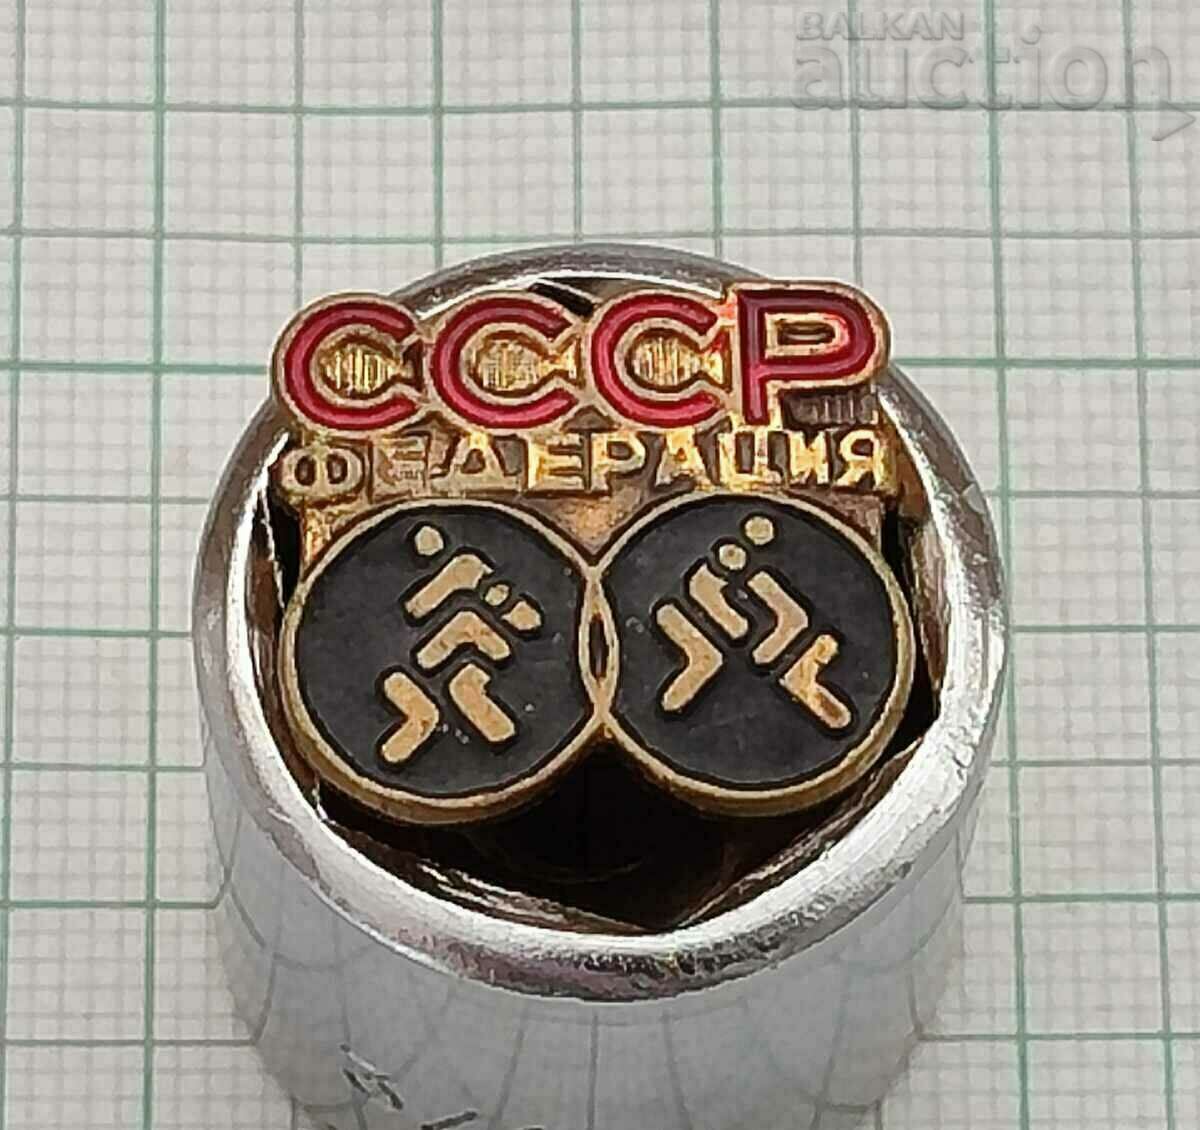 USSR WRESTLING FEDERATION BADGE